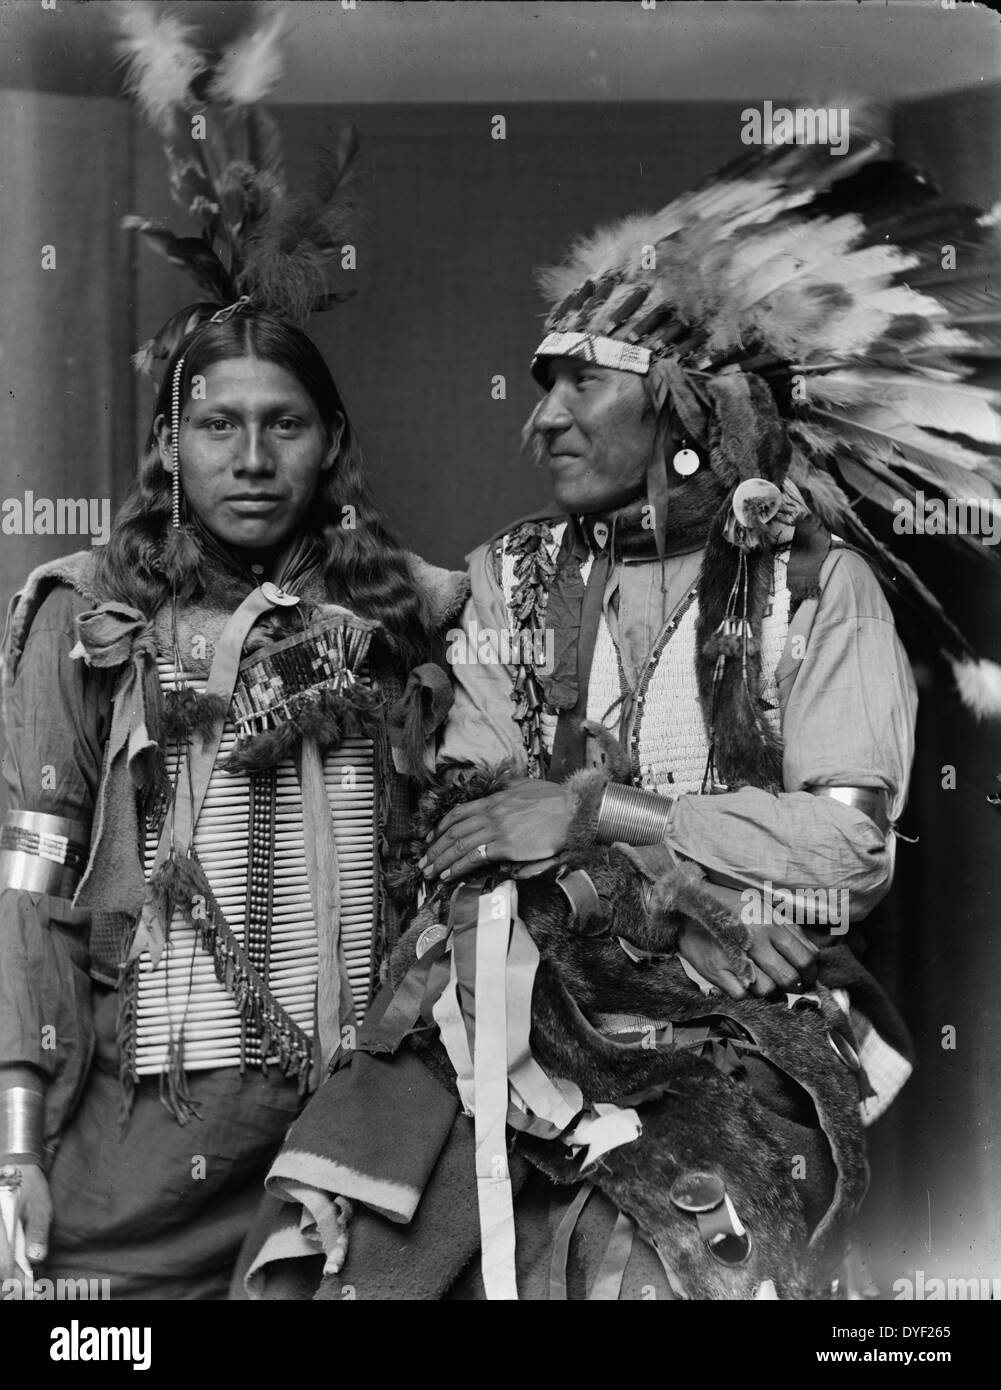 Indiani americani dal fotografo Gertrude Käsebier, 1852-1934. Rana santo (sinistra) e Big Navoni erano probabilmente membri di Buffalo Bill's Wild West Show di metà lunghezza verticale, uno che indossa un copricapo. Datata ca. 1900 Foto Stock